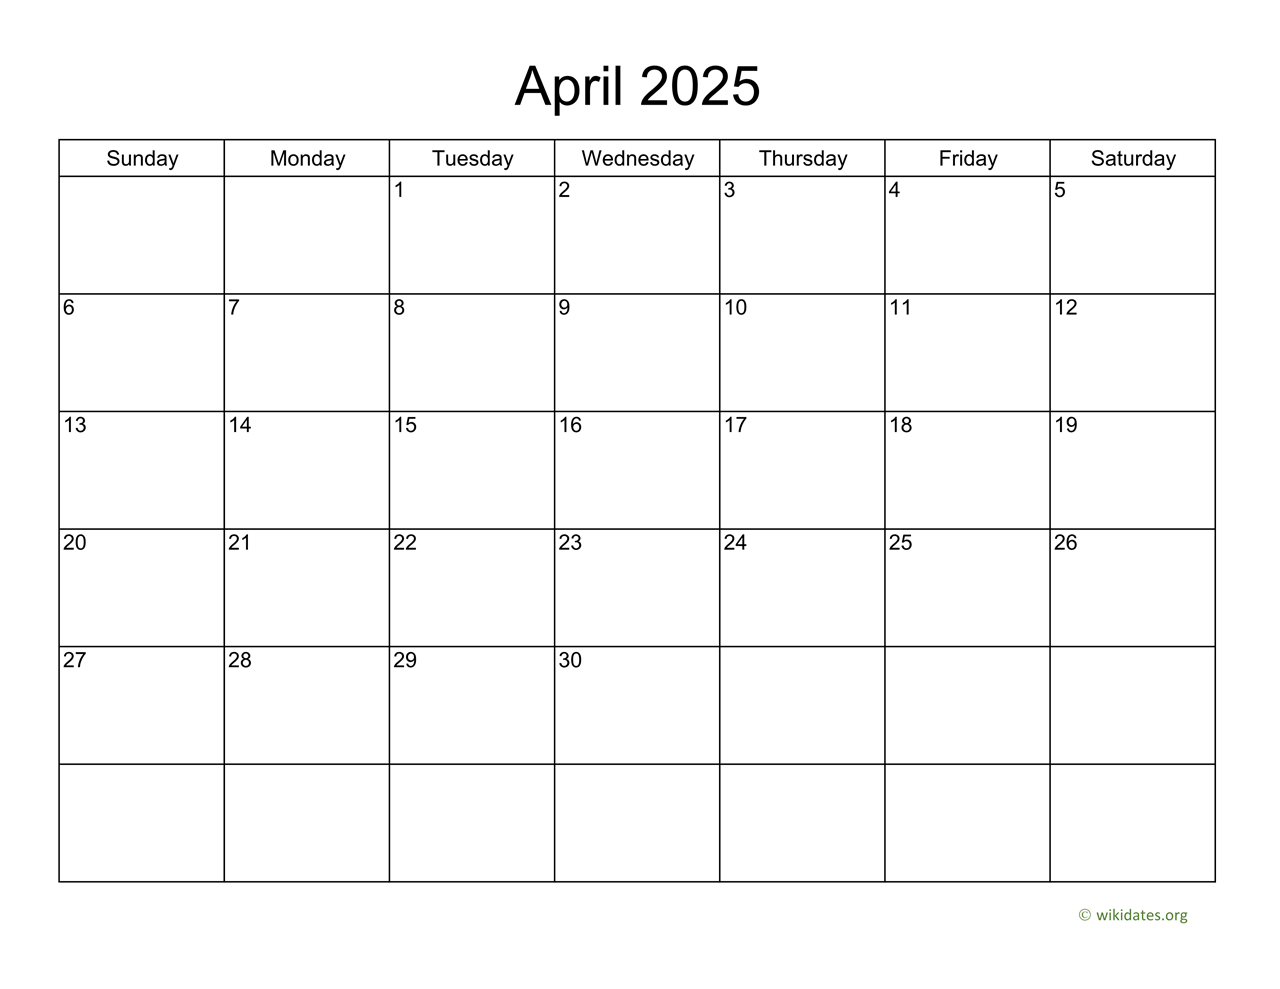 basic-calendar-for-april-2025-wikidates